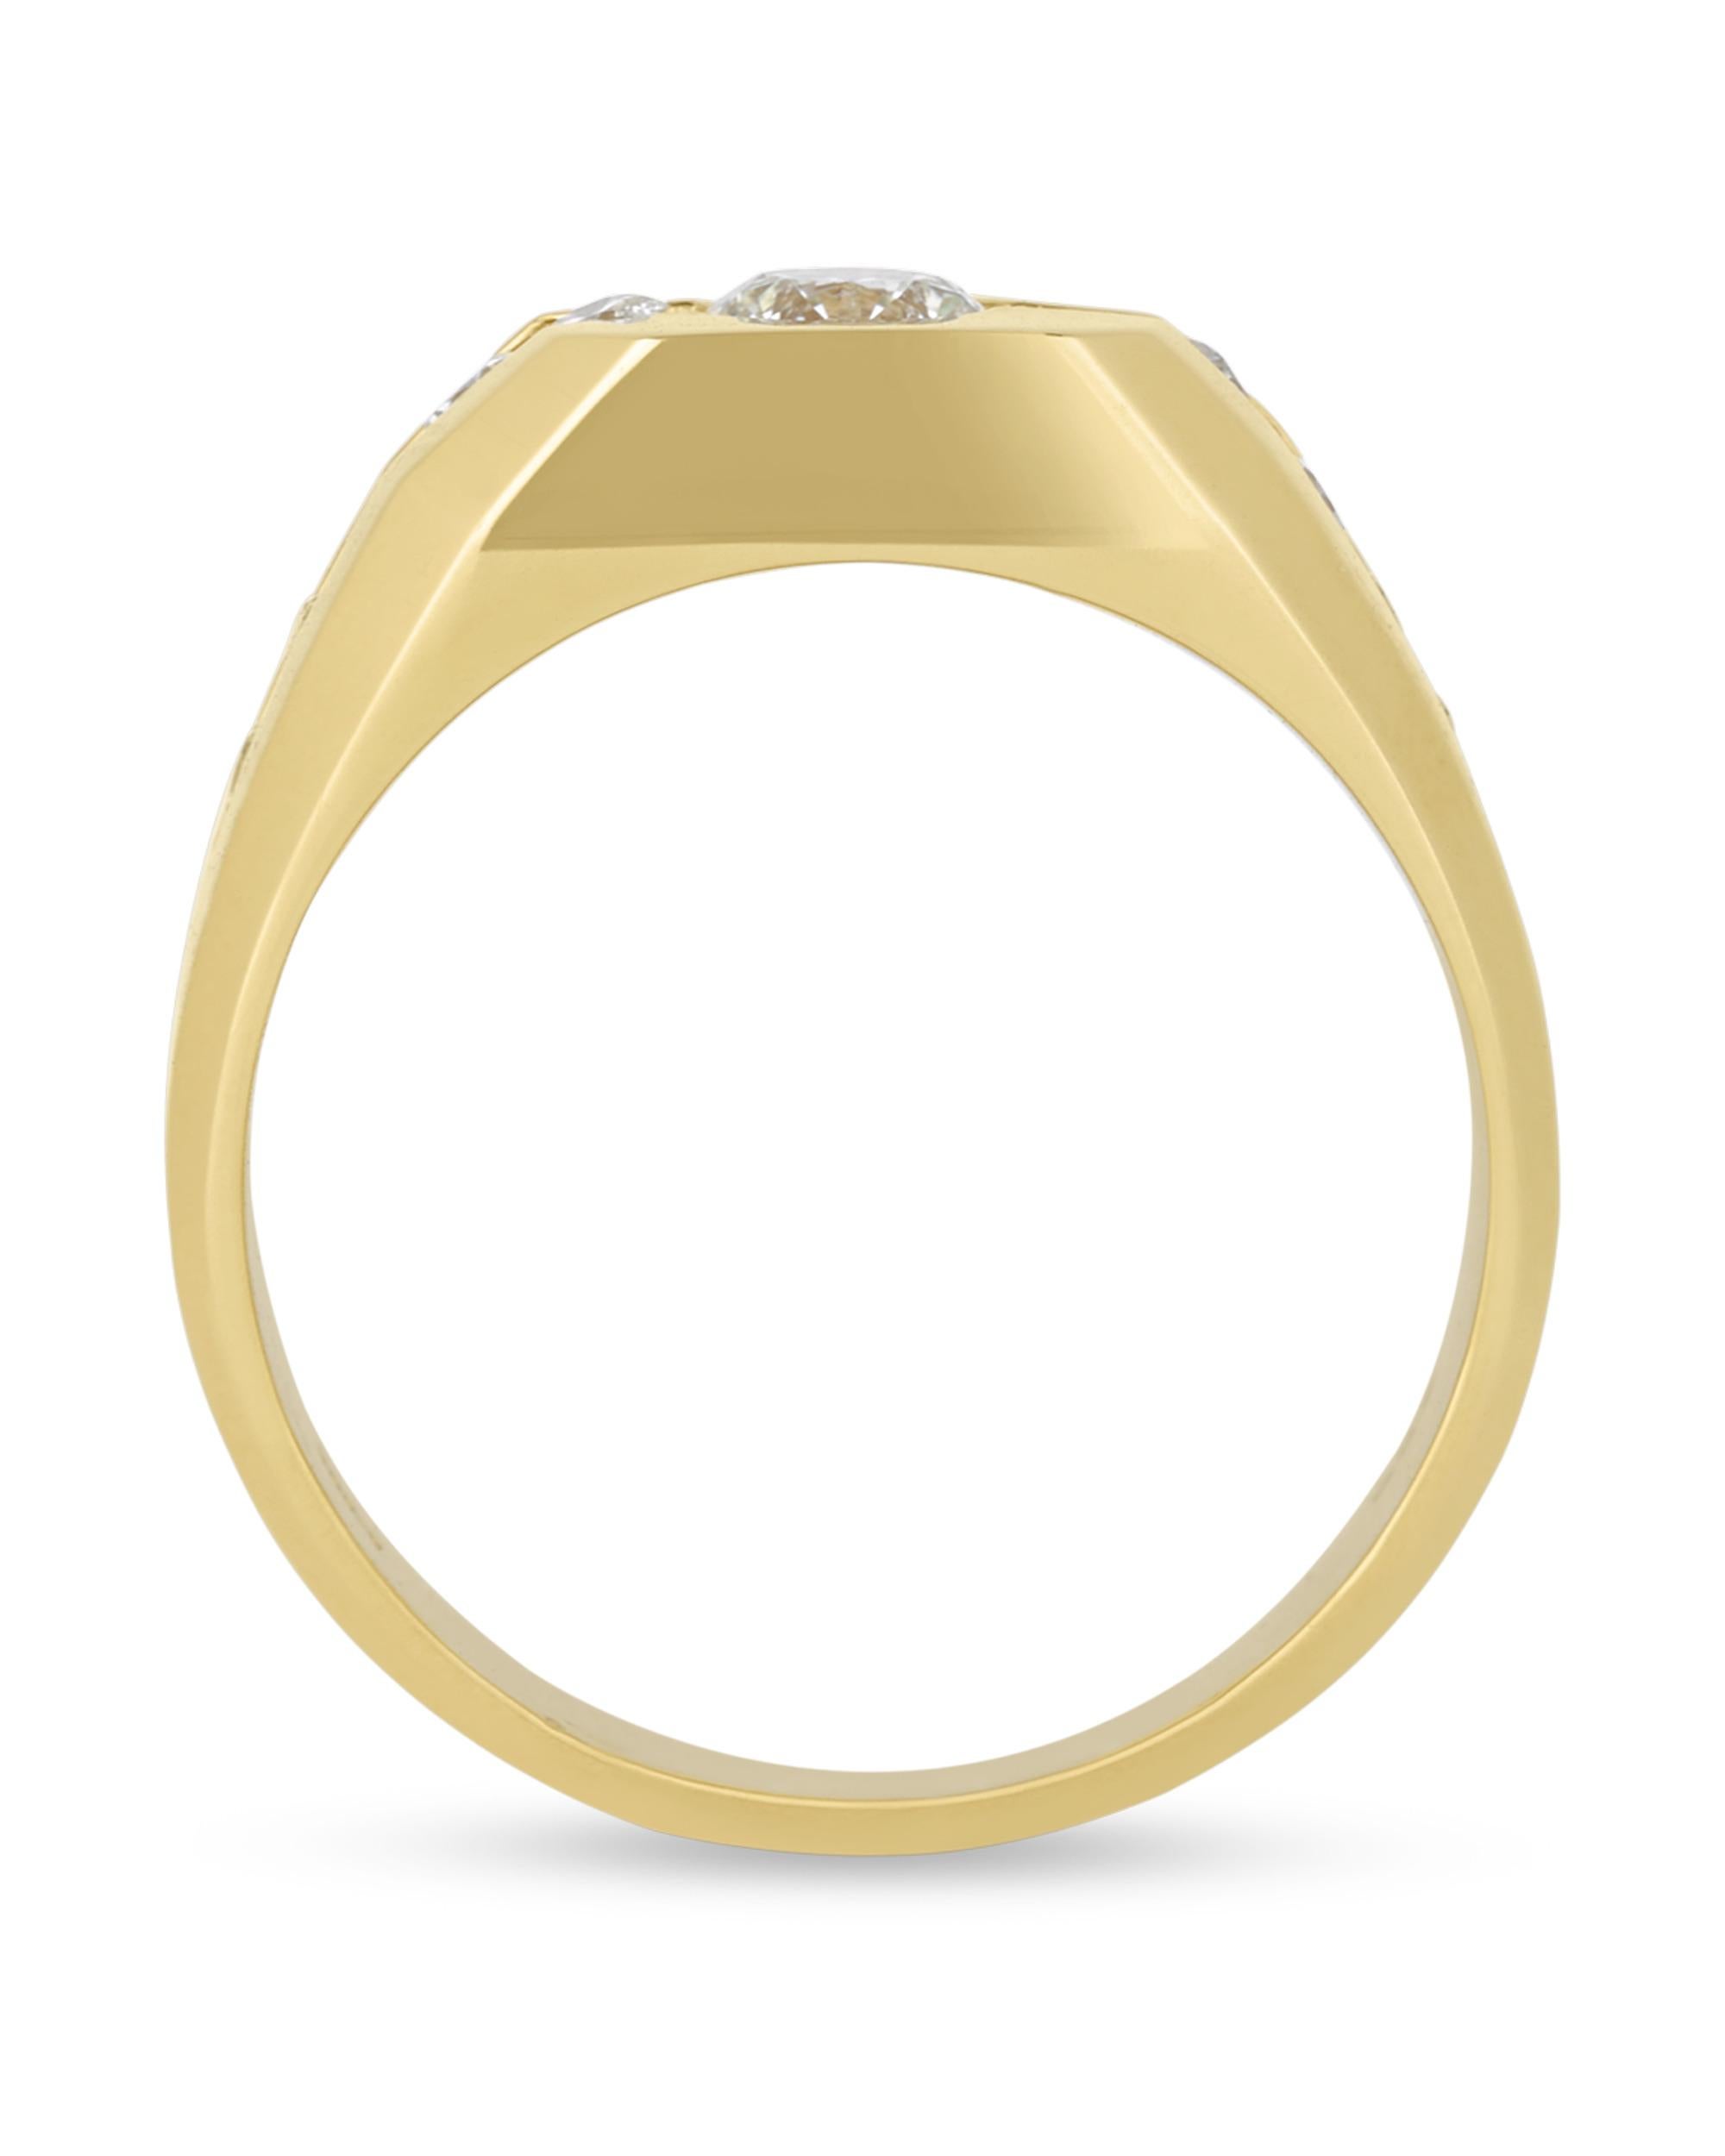 Weiße Diamanten von insgesamt 1,35 Karat strahlen in diesem hübschen Herrenring. Der zentrale Diamant mit einem Gewicht von 0,70 Karat befindet sich in einem stufenförmigen Design aus 14-karätigem Gelbgold.